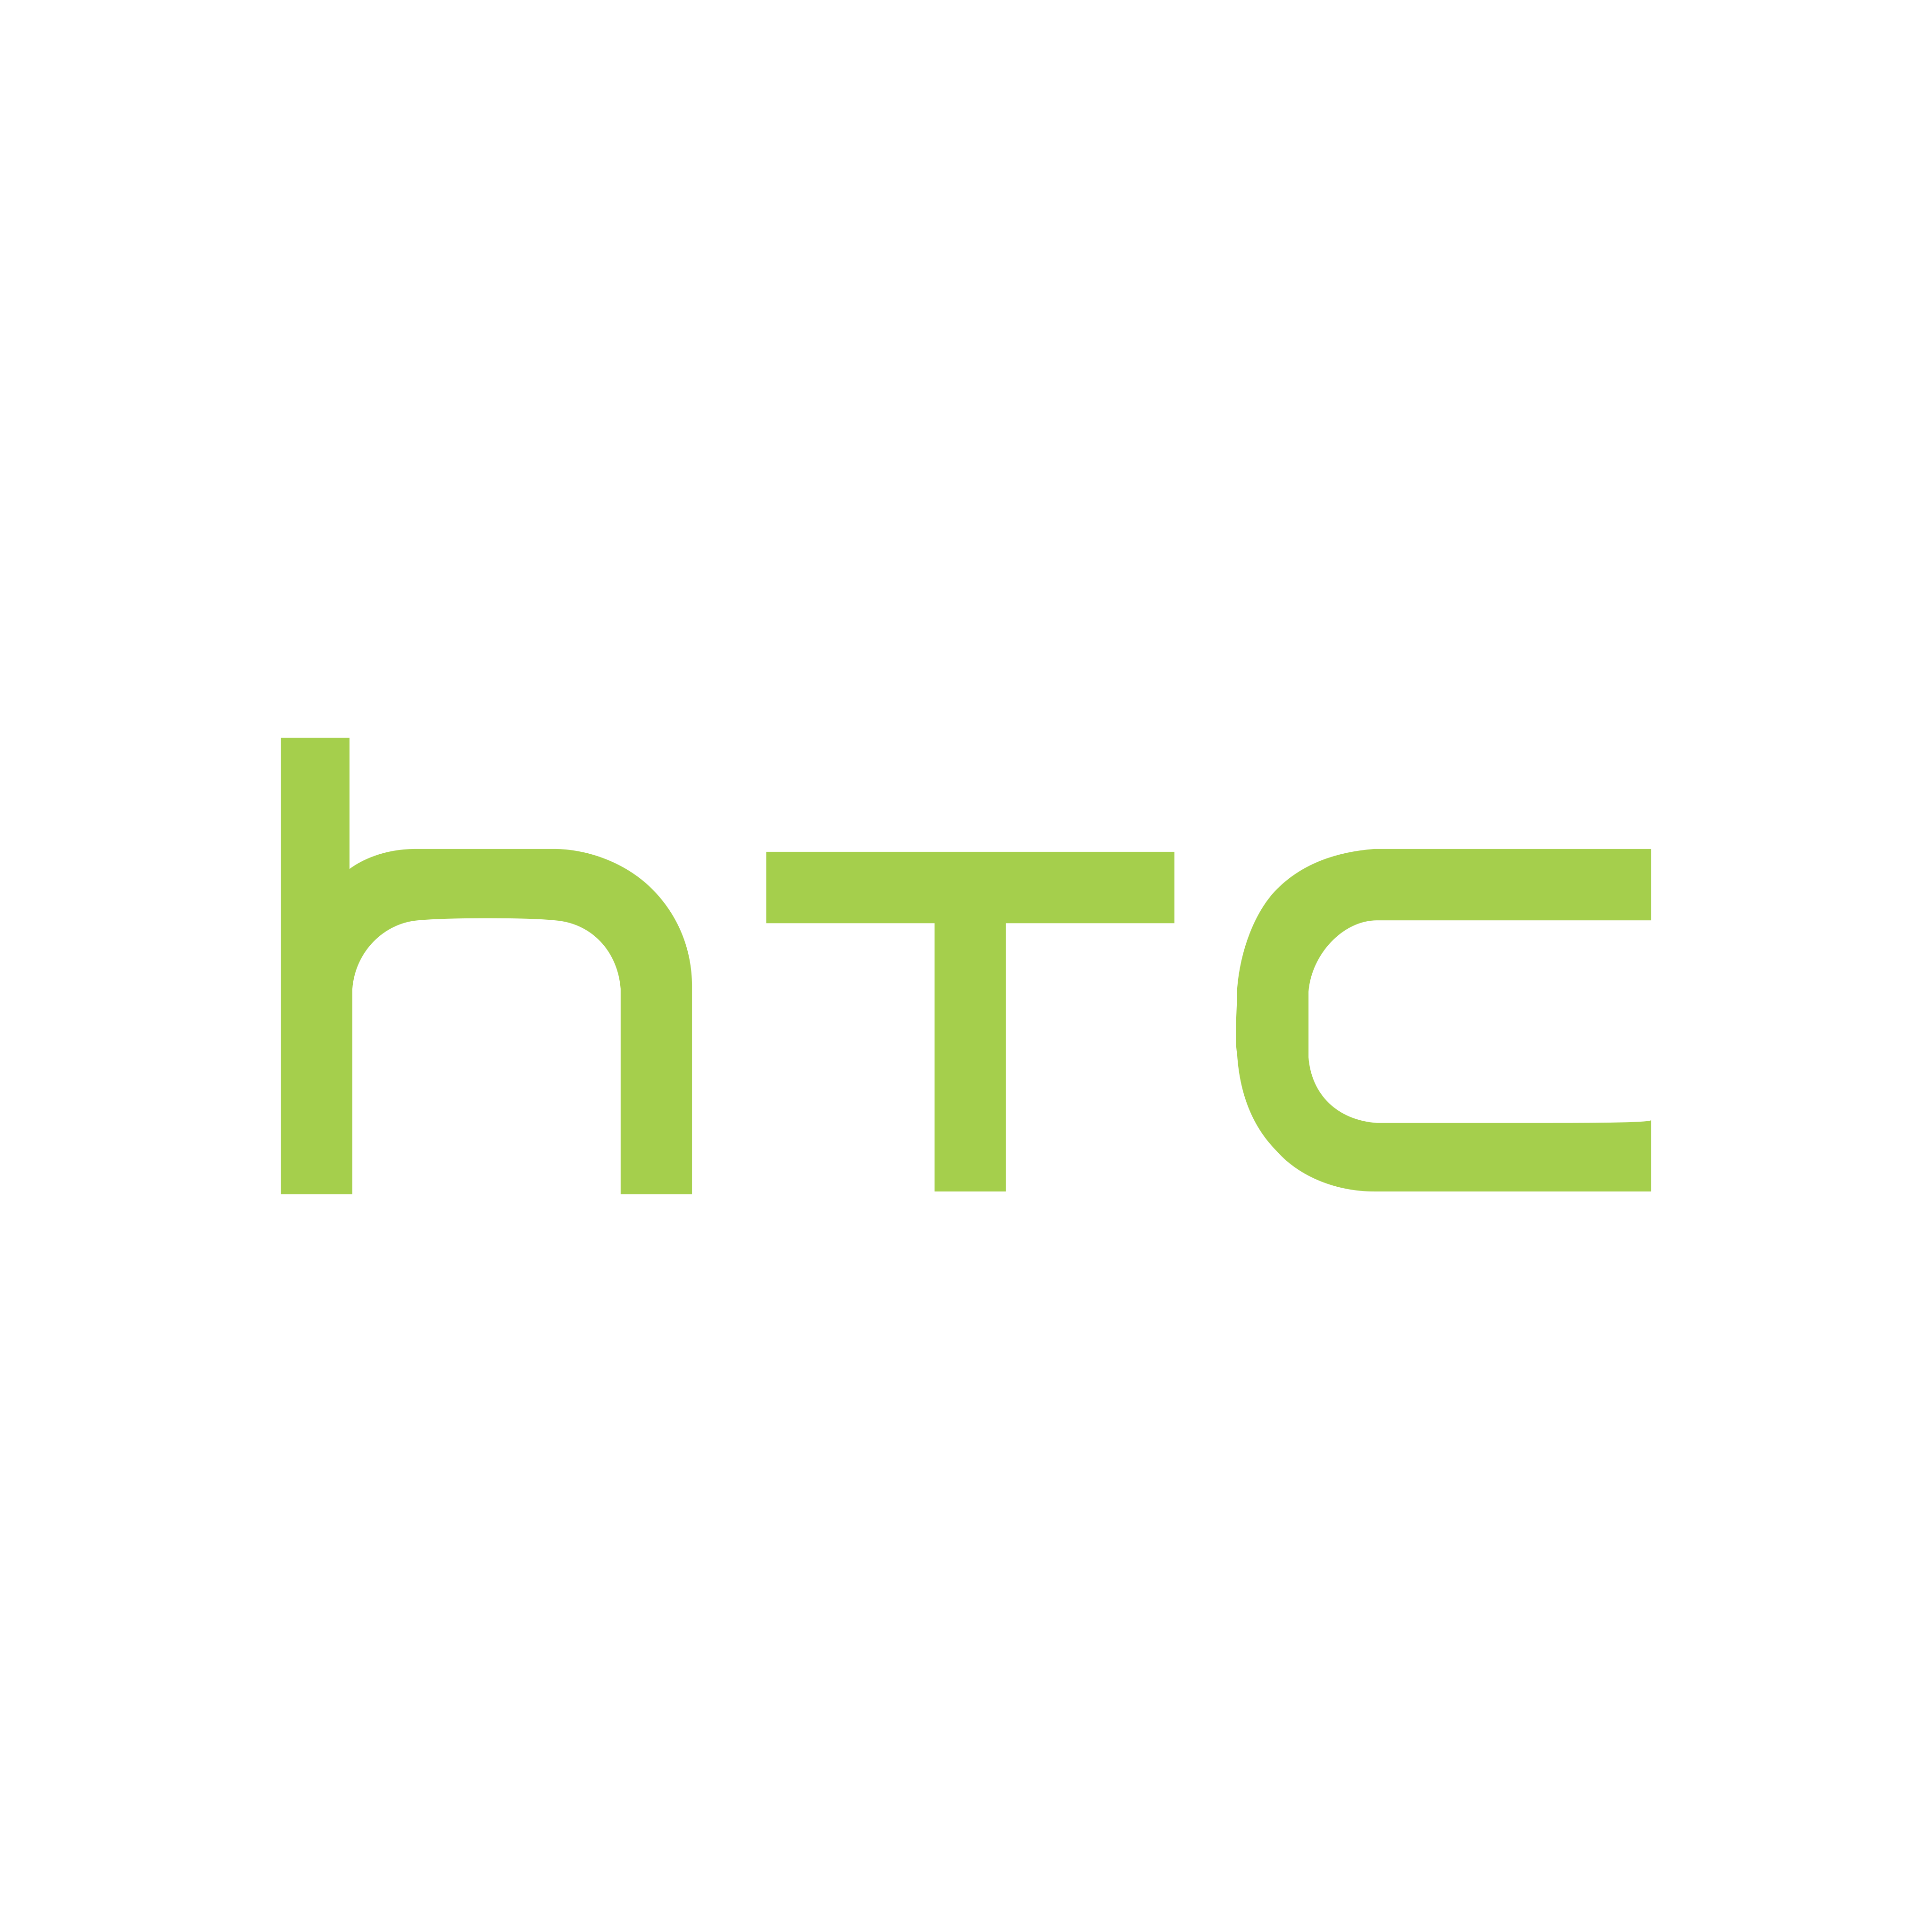 htc logo 0 - HTC Logo